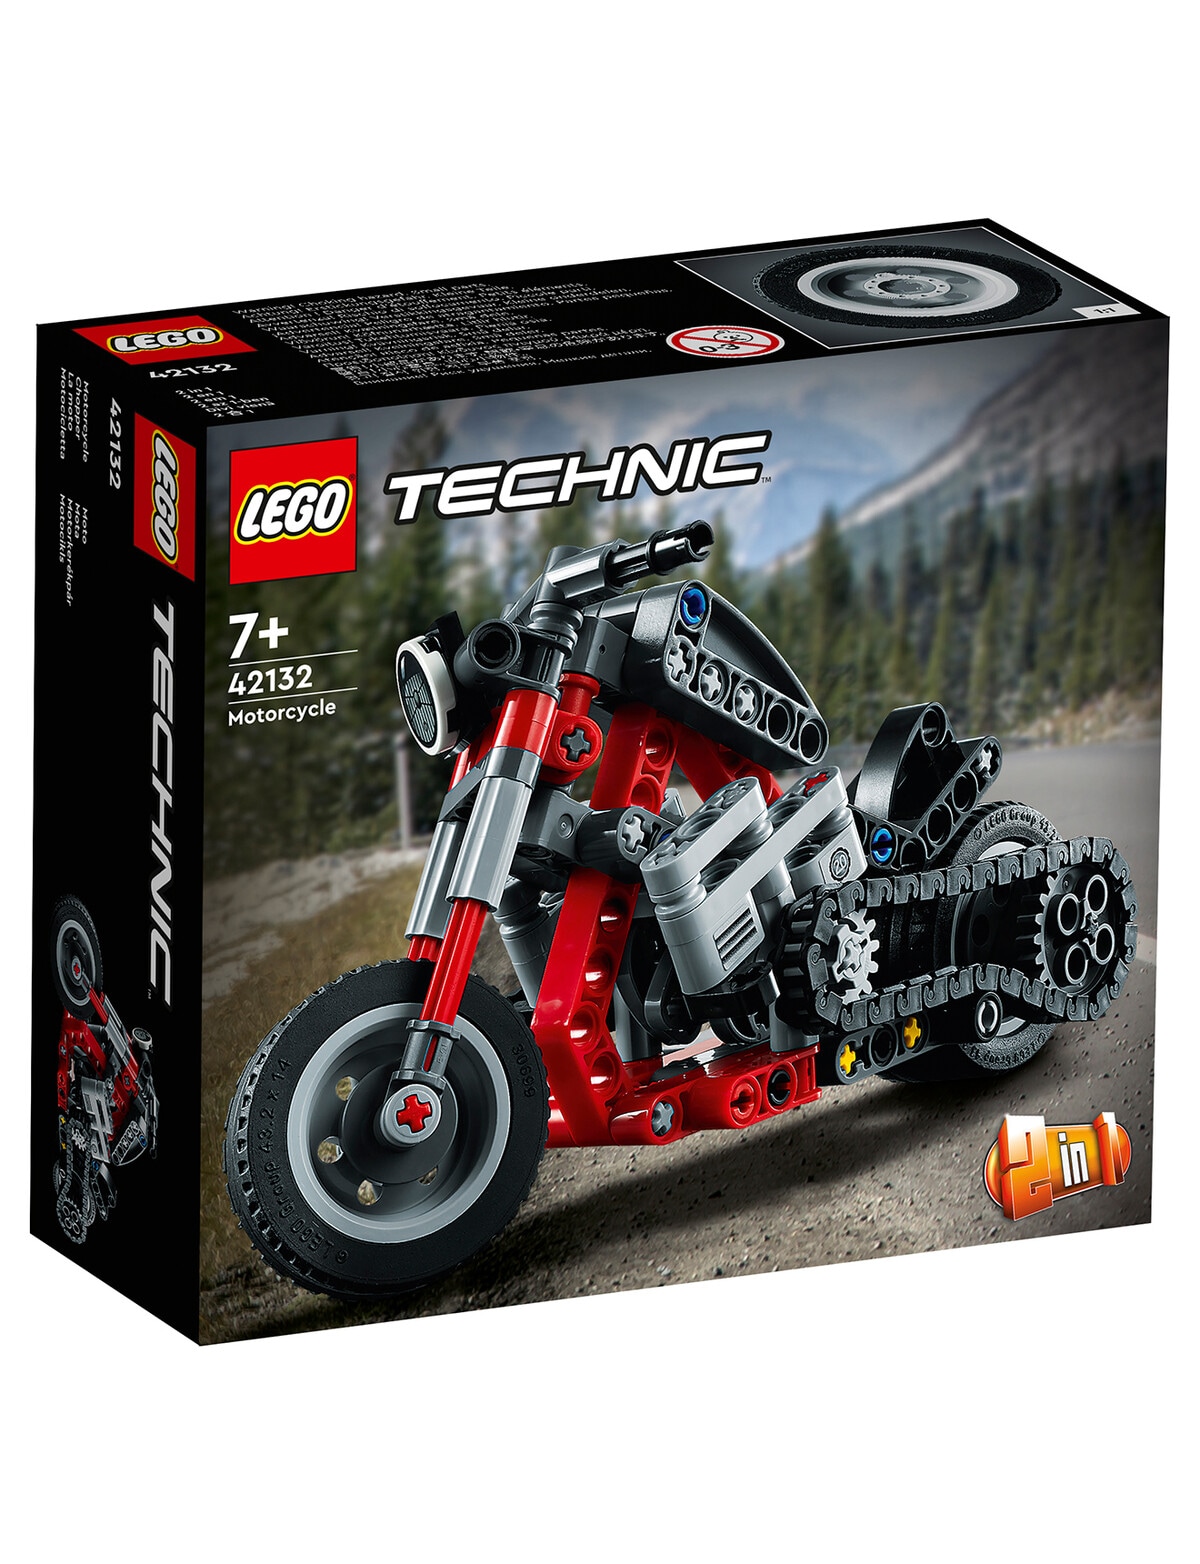 Moto Lego Technic - Tutto per i bambini In vendita a Pavia